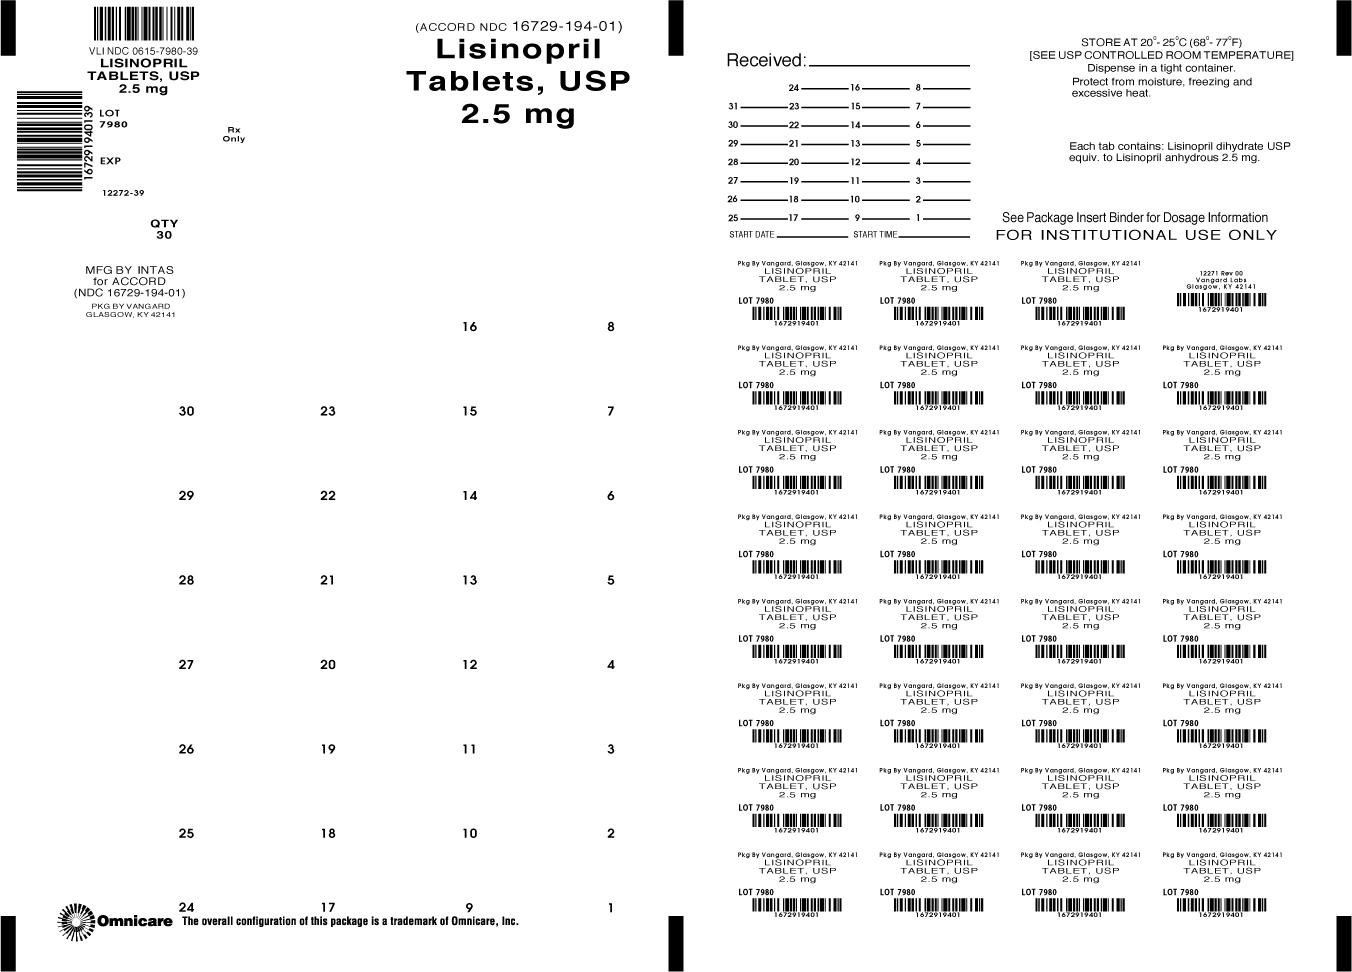 Lisinopril 2.5mg bingo card label